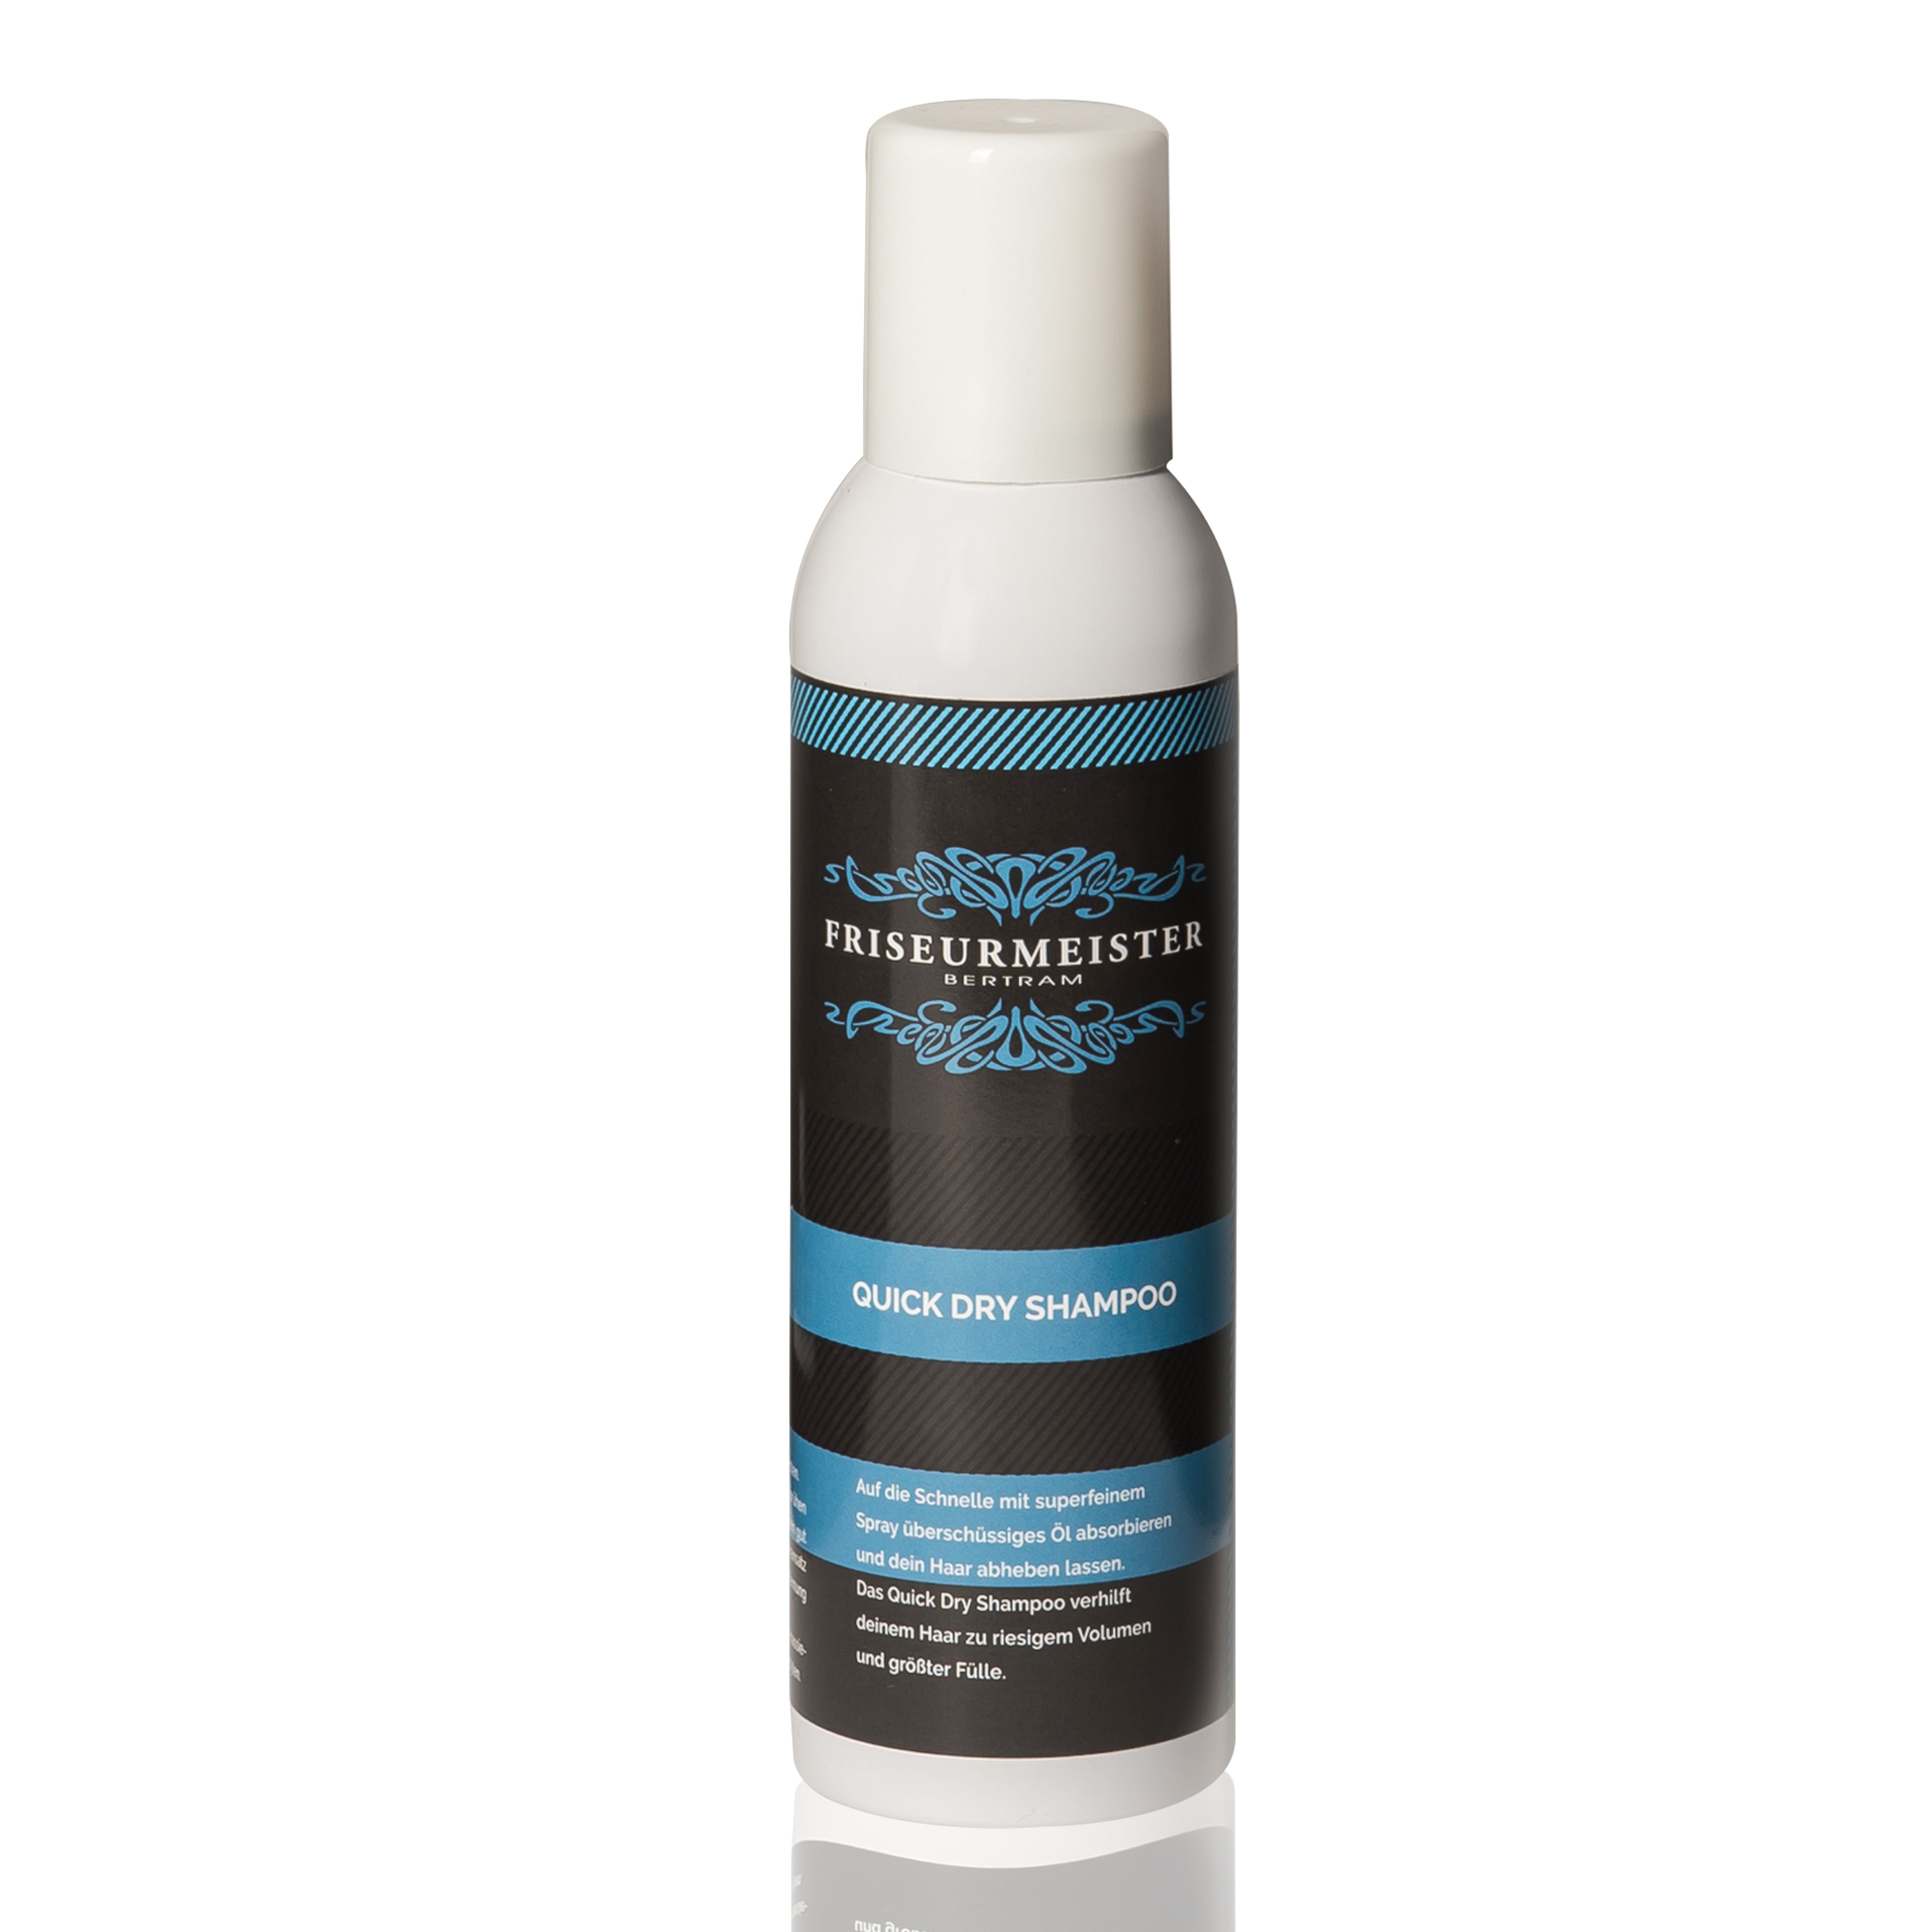 Friseurmeister Trockenshampoo Quick Dry Shampoo hilft riesigem Volumen und größter Fülle für Alle Haartypen 200ml